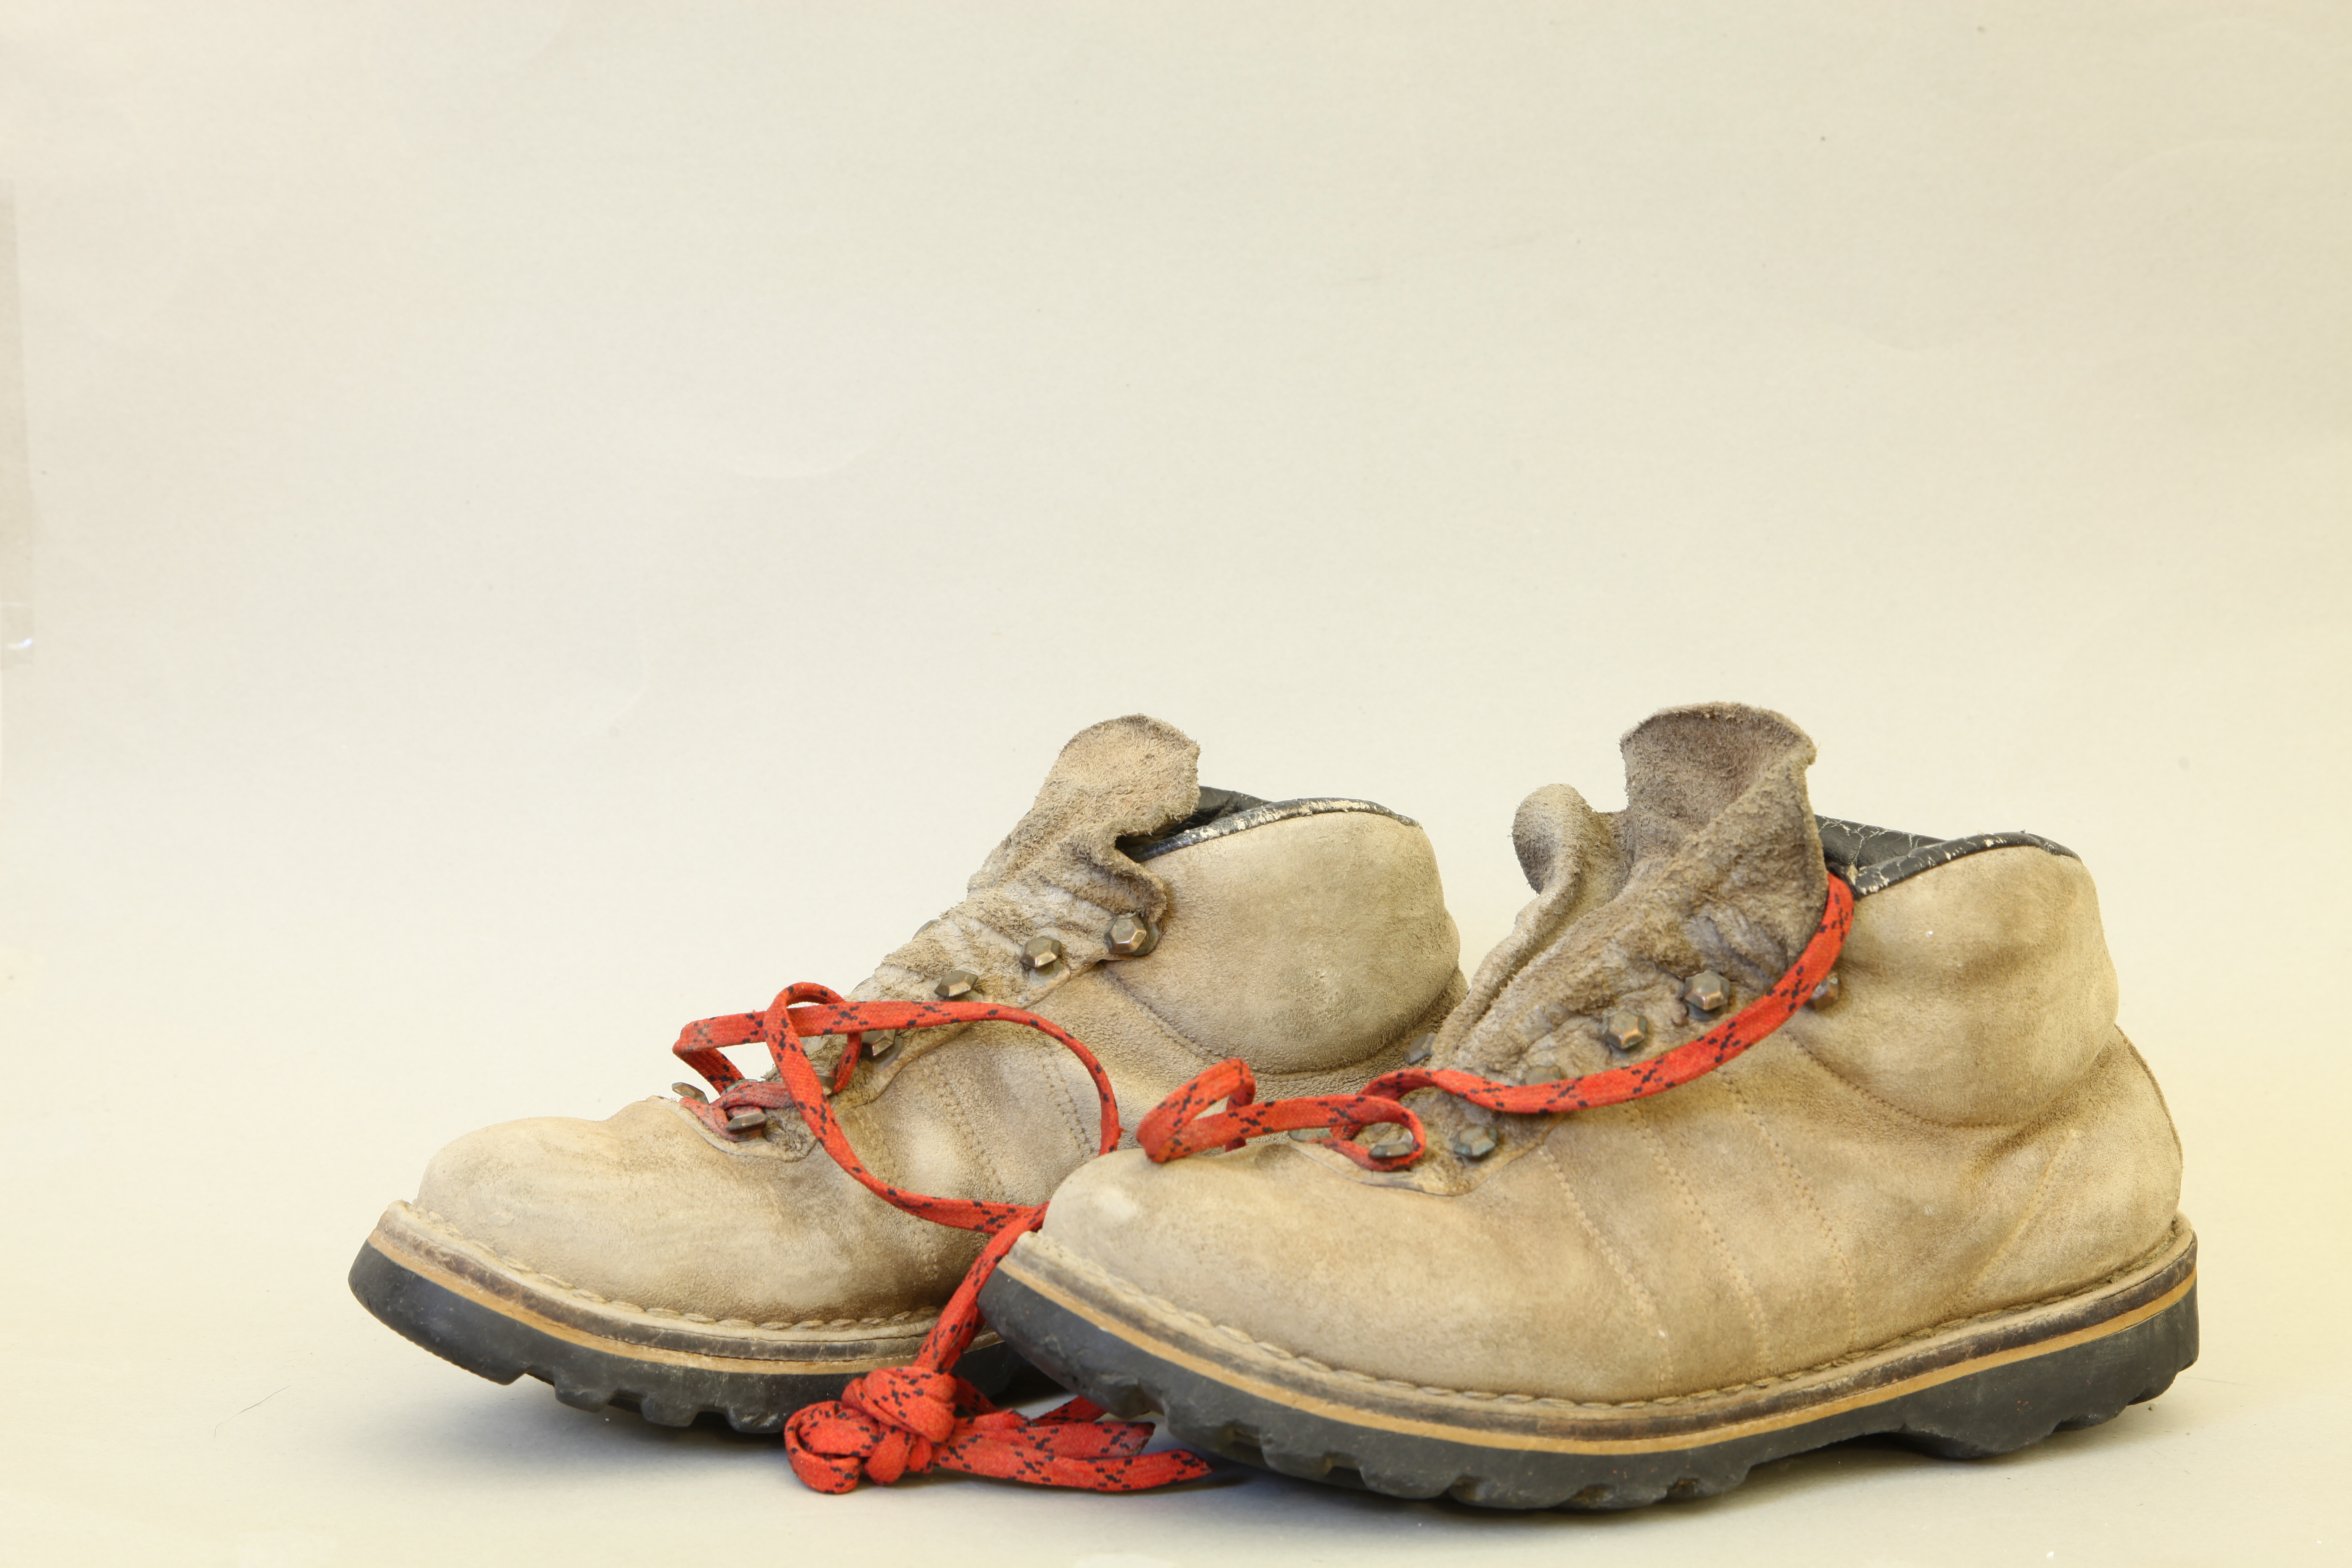 نام شی: کفش کوهنوردی متعلق به شرکت Matterhorn محل نمایش:گالری اول ، موزه برادران امیدوار